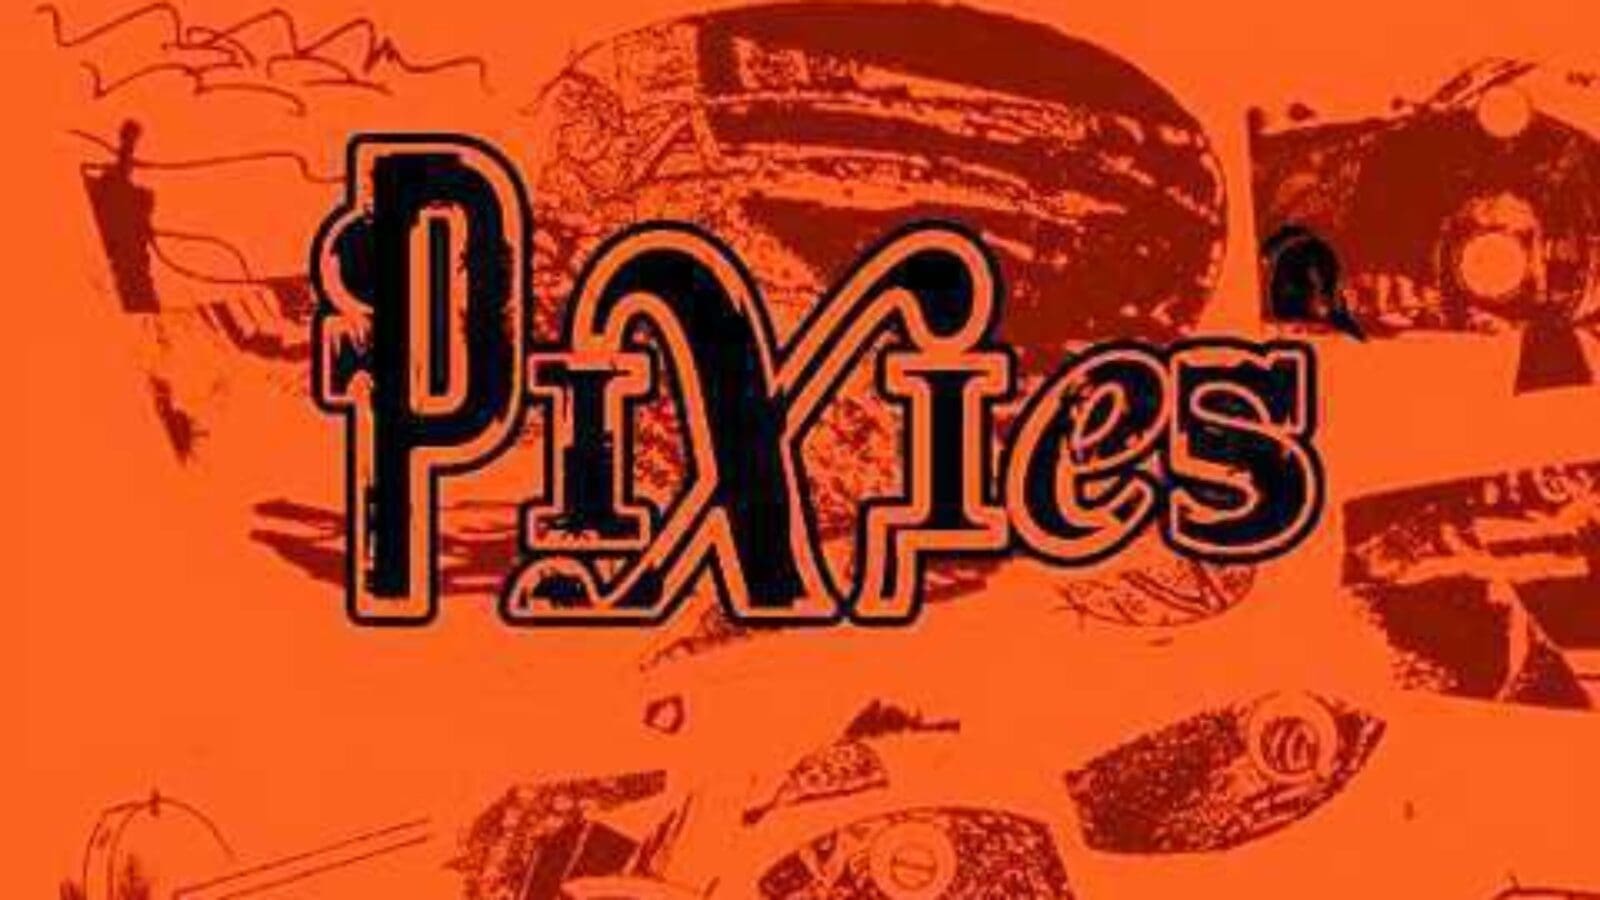 Mo., 27.02., Pixies, Große Freiheit 36 & The Academic, Molotow